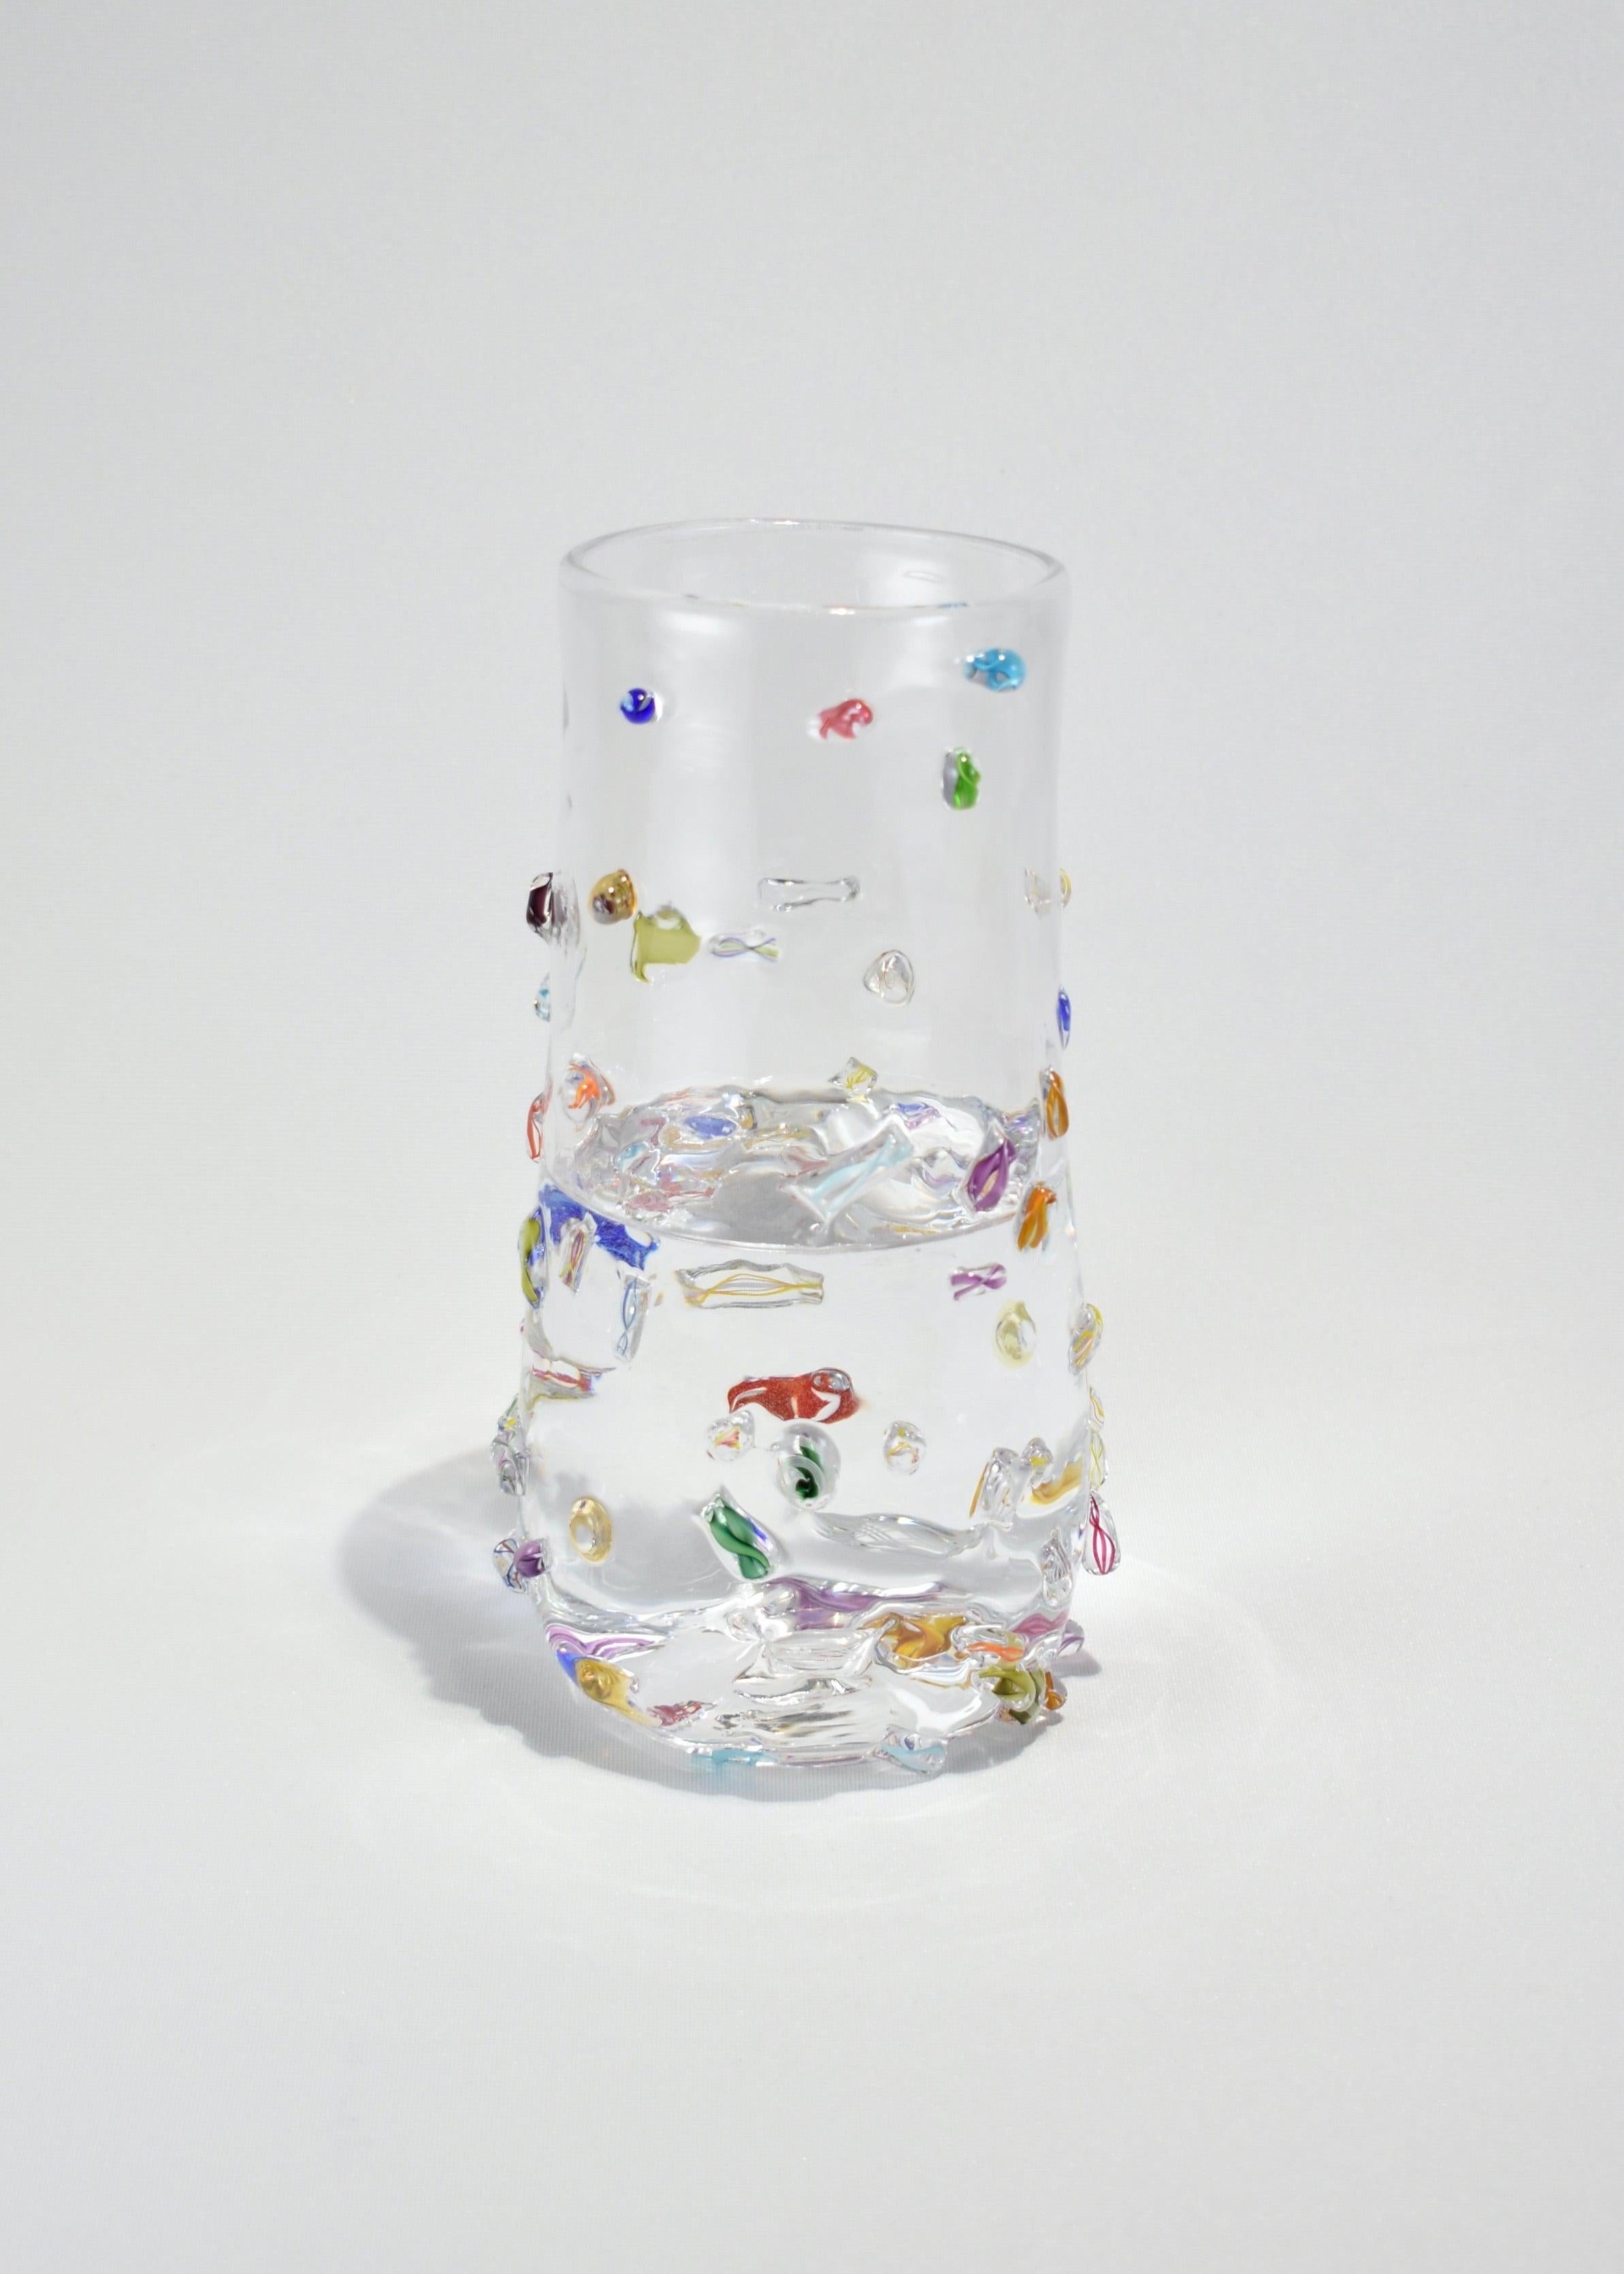 Zylindervase aus geblasenem Glas mit aufgesetztem Dekor. Handgefertigt in den USA von Lisa Stover. Exklusiv bei Casa Shop.

Bitte beachten Sie: Aufgrund der handgefertigten Natur dieser Vase sind subtile Abweichungen in Form und Ausführung zu